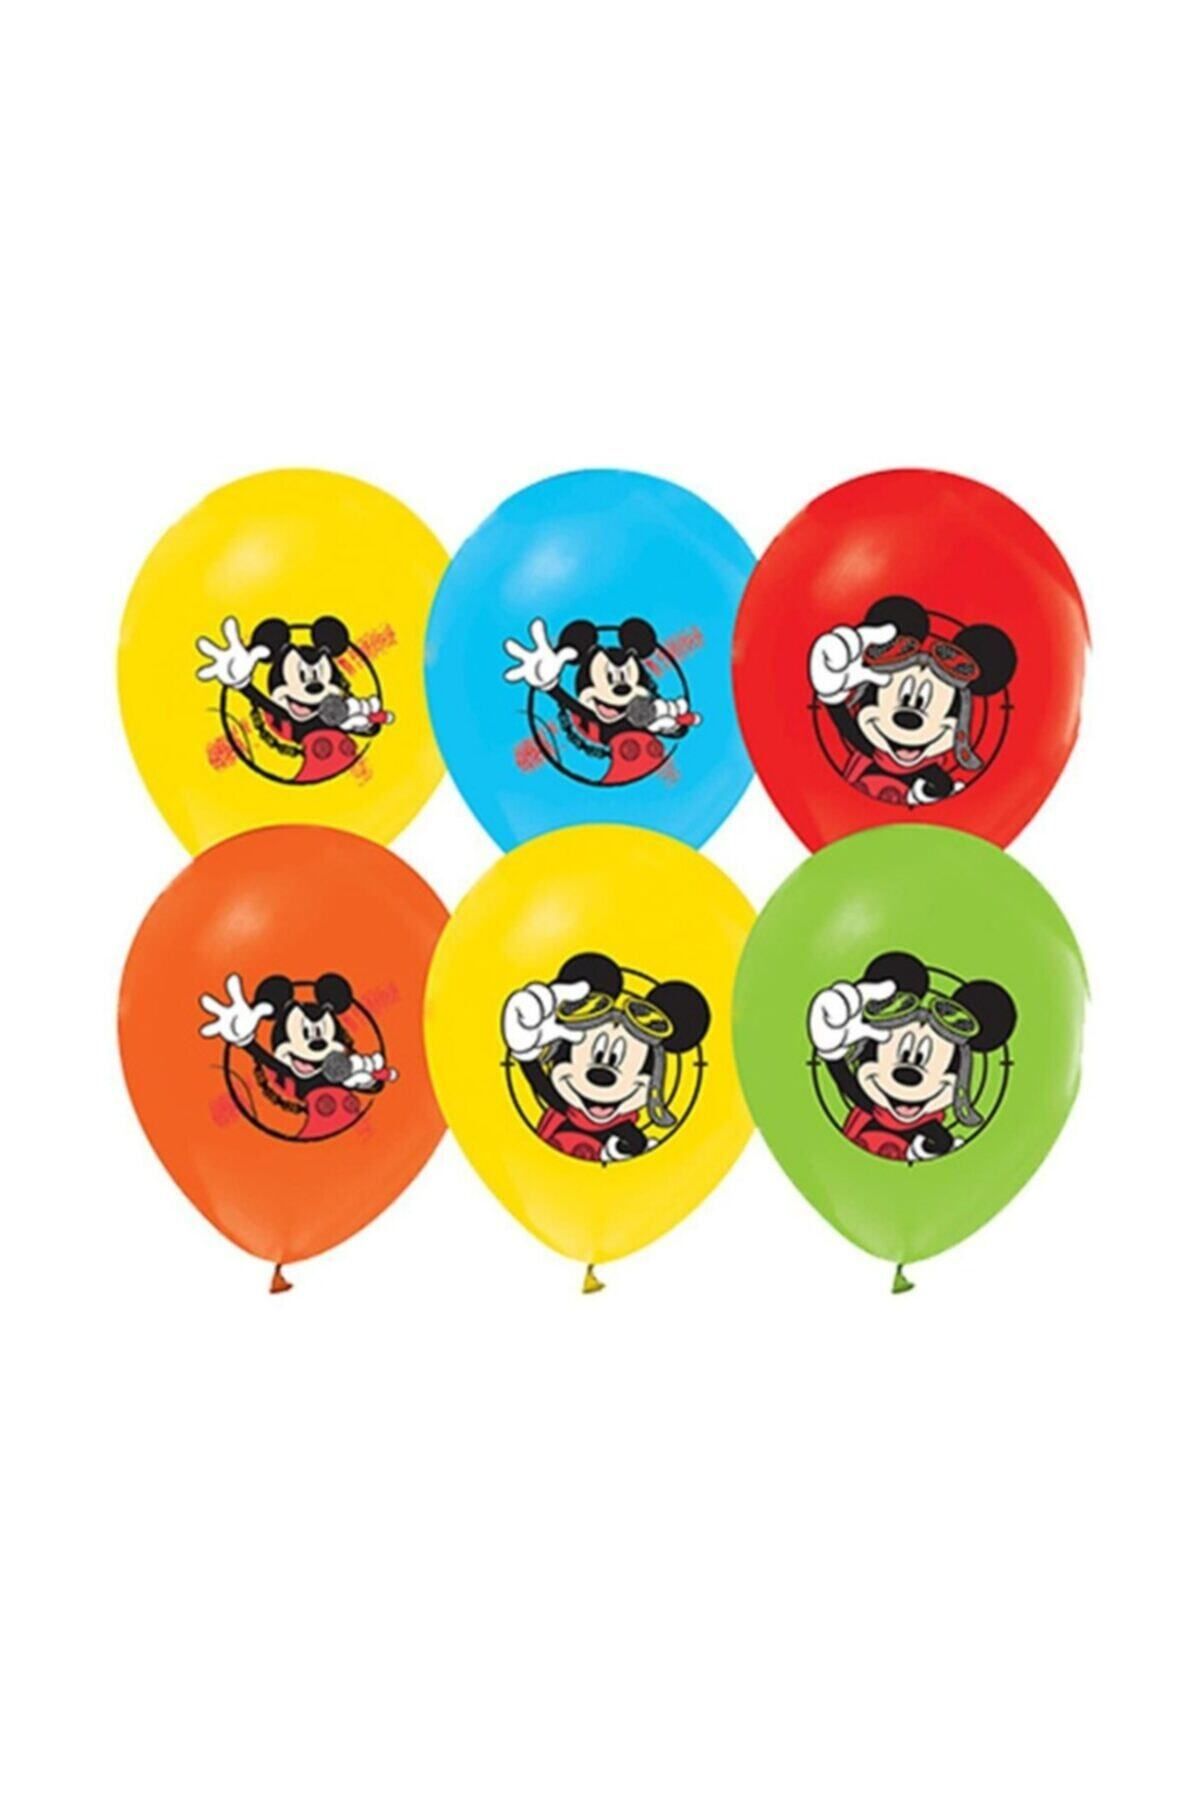 Ece Mickey Mouse Miki Mause Baskılı Balon 10 Adet